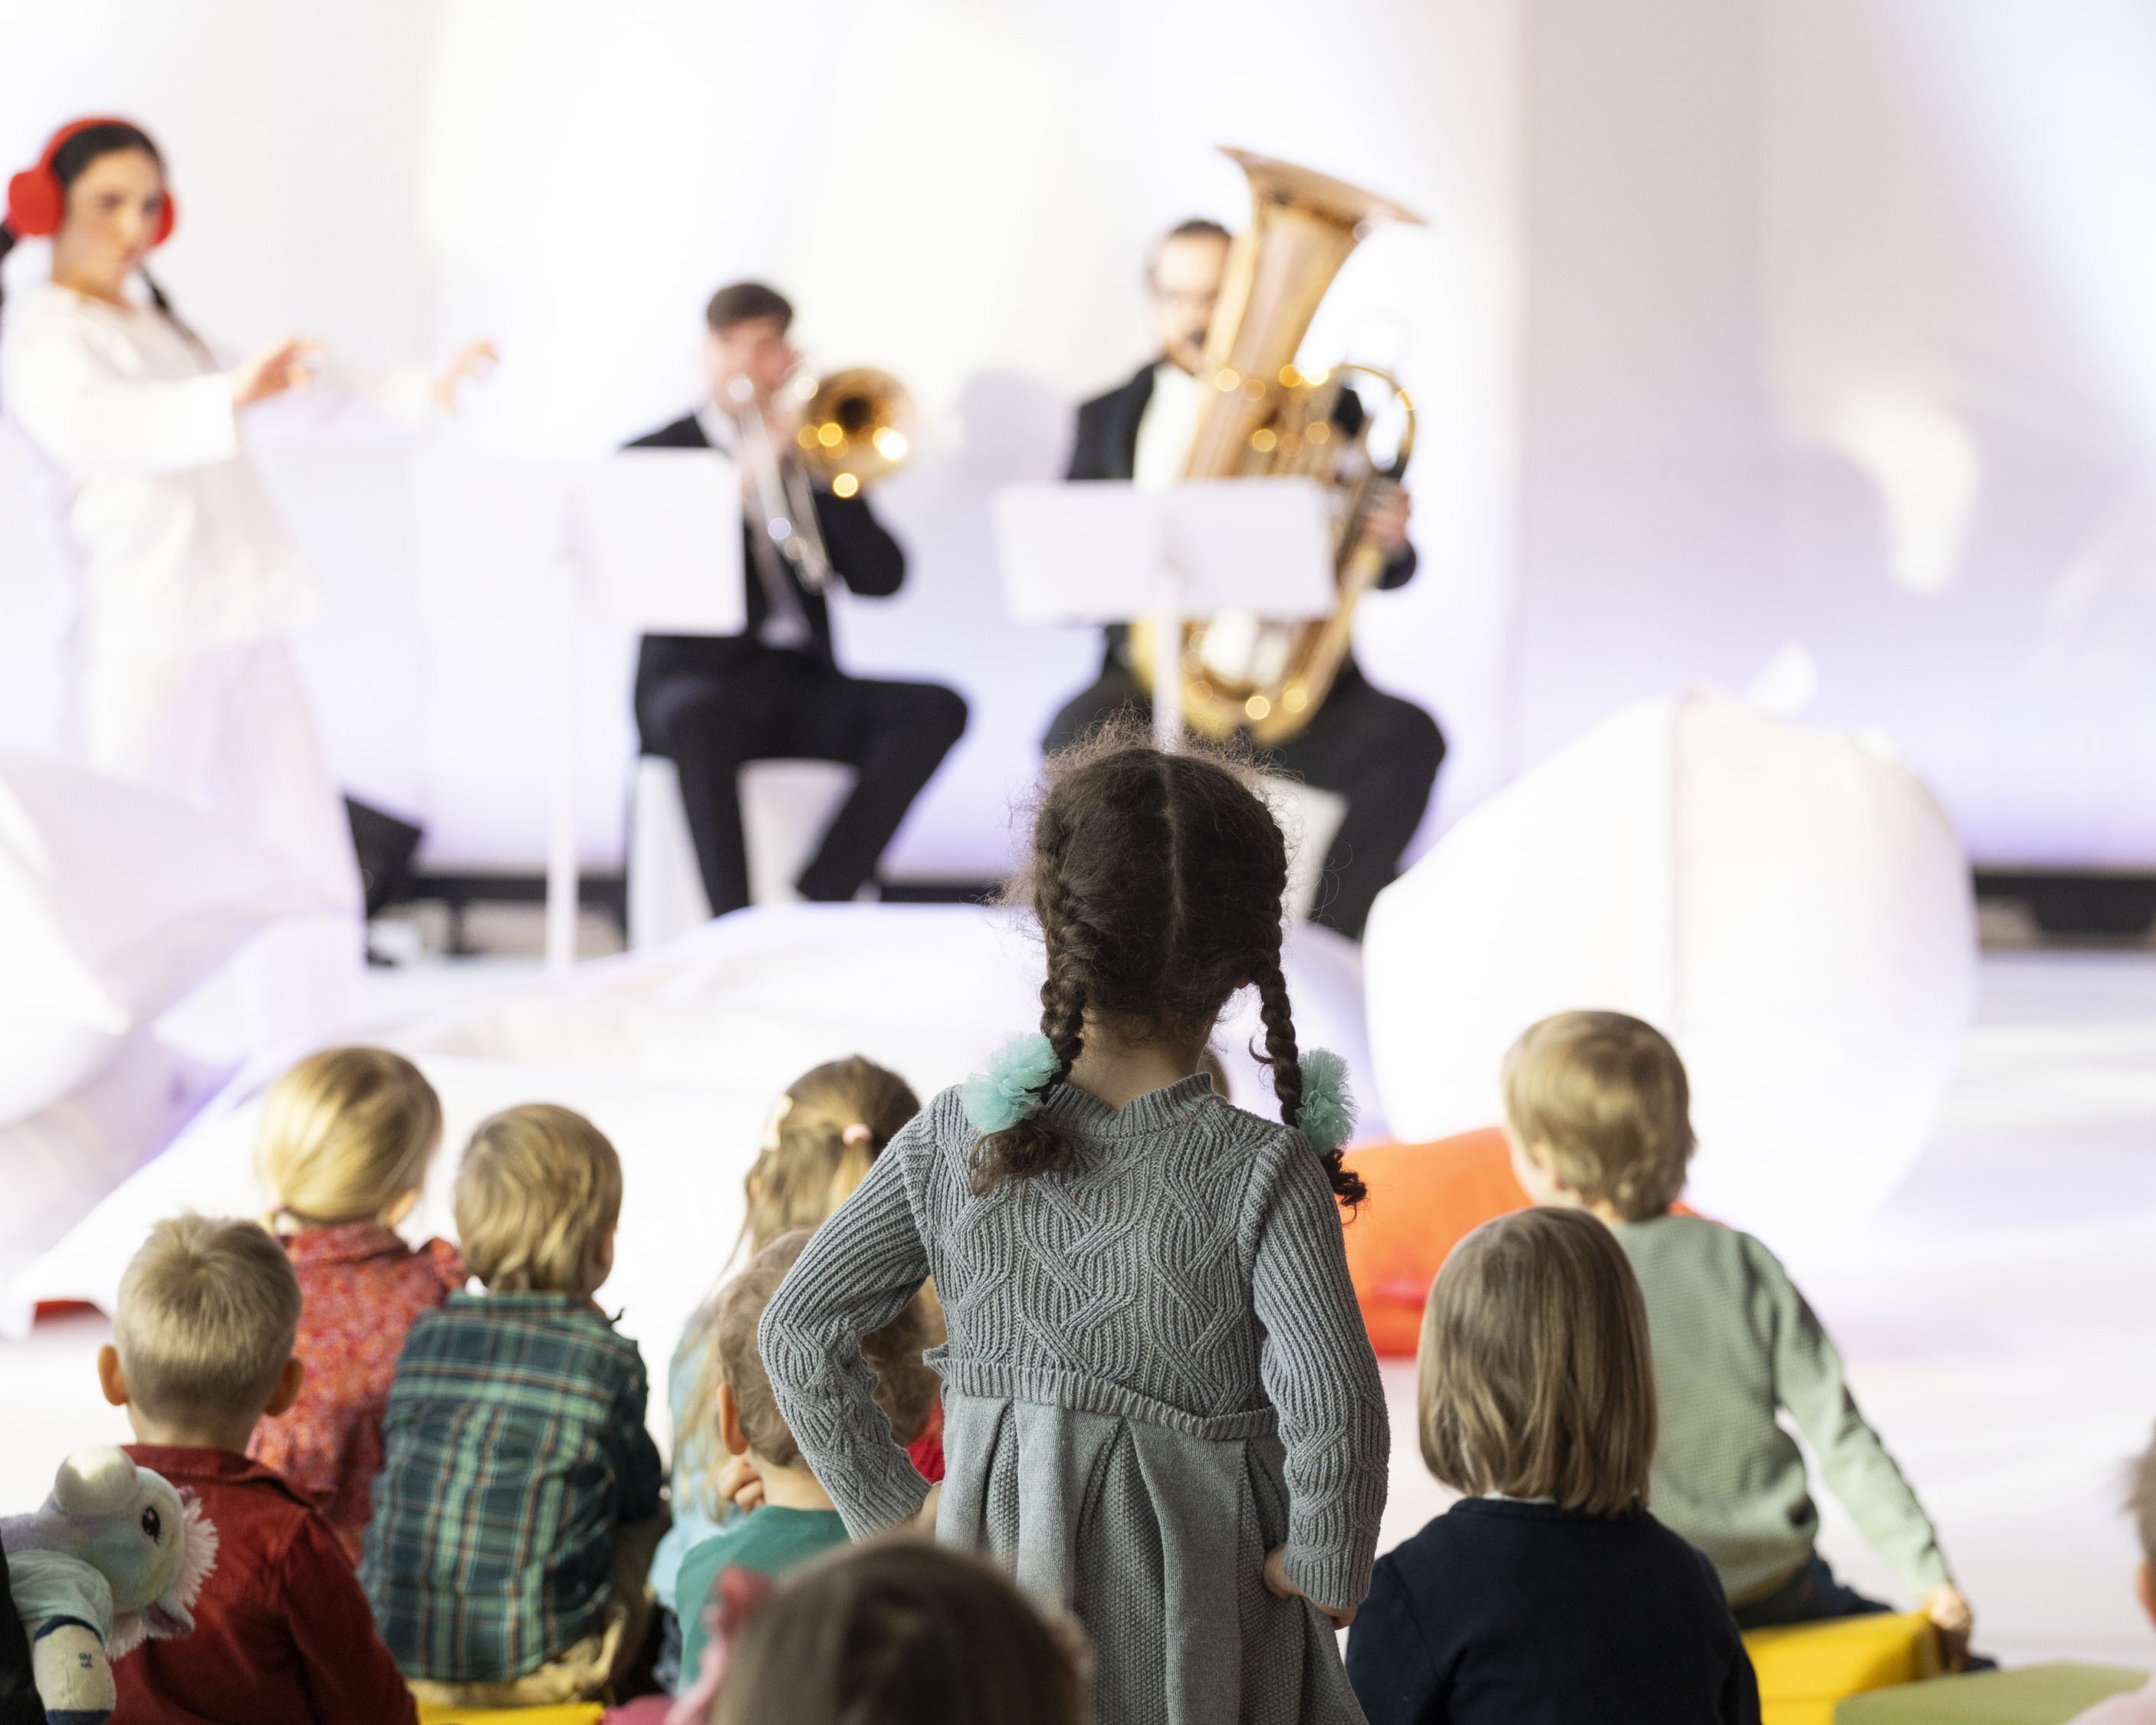 Kinder im Publikum, zwei Musiker spielen Musik, zwei Frauen in weißen Anzügen